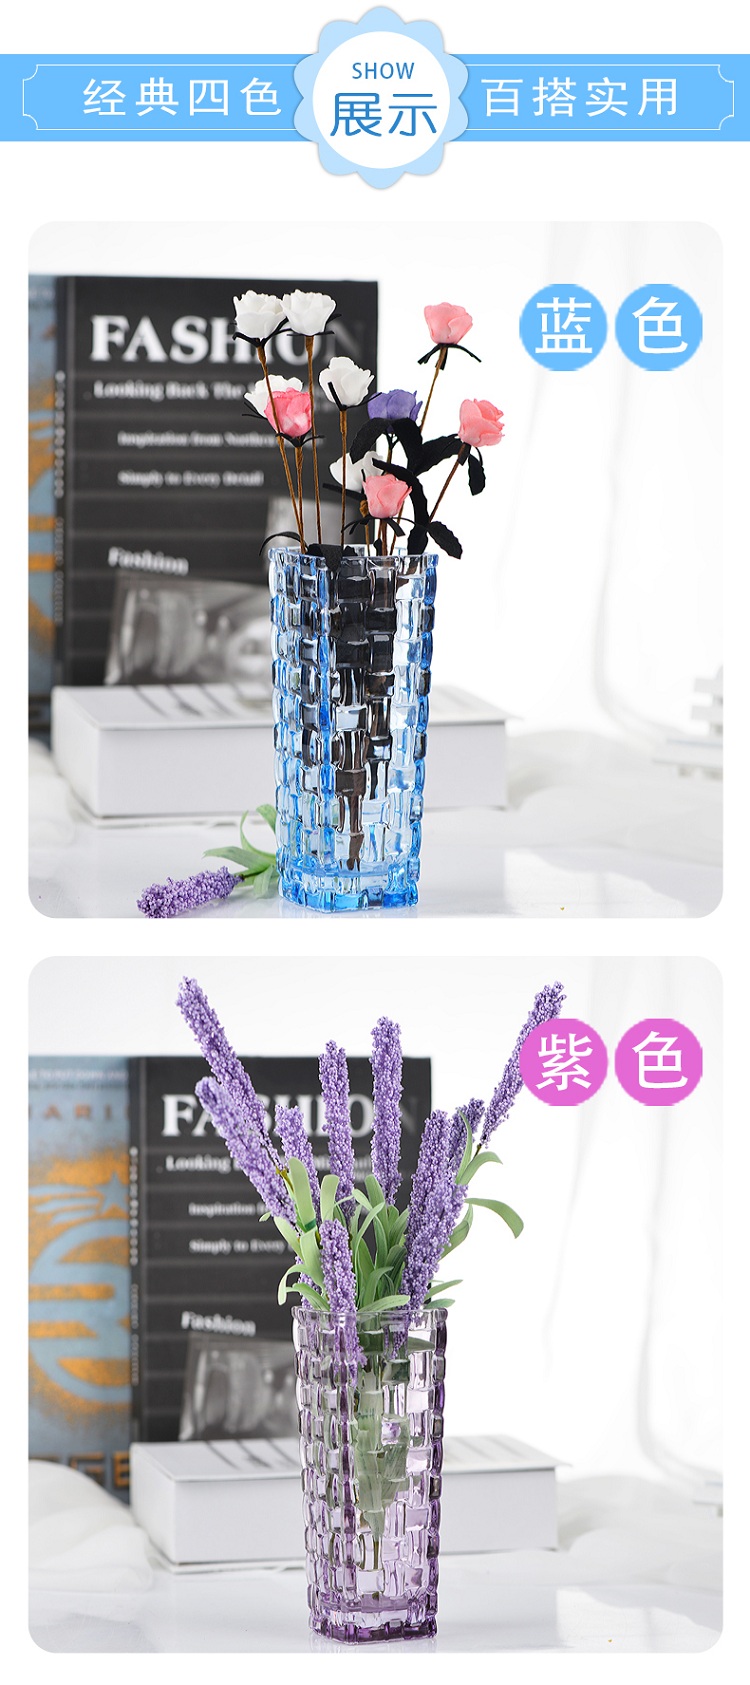 克芮思托 巴塞罗彩饰花插15.5cm 创意艺术水培植物瓶 彩色晶质插花花瓶